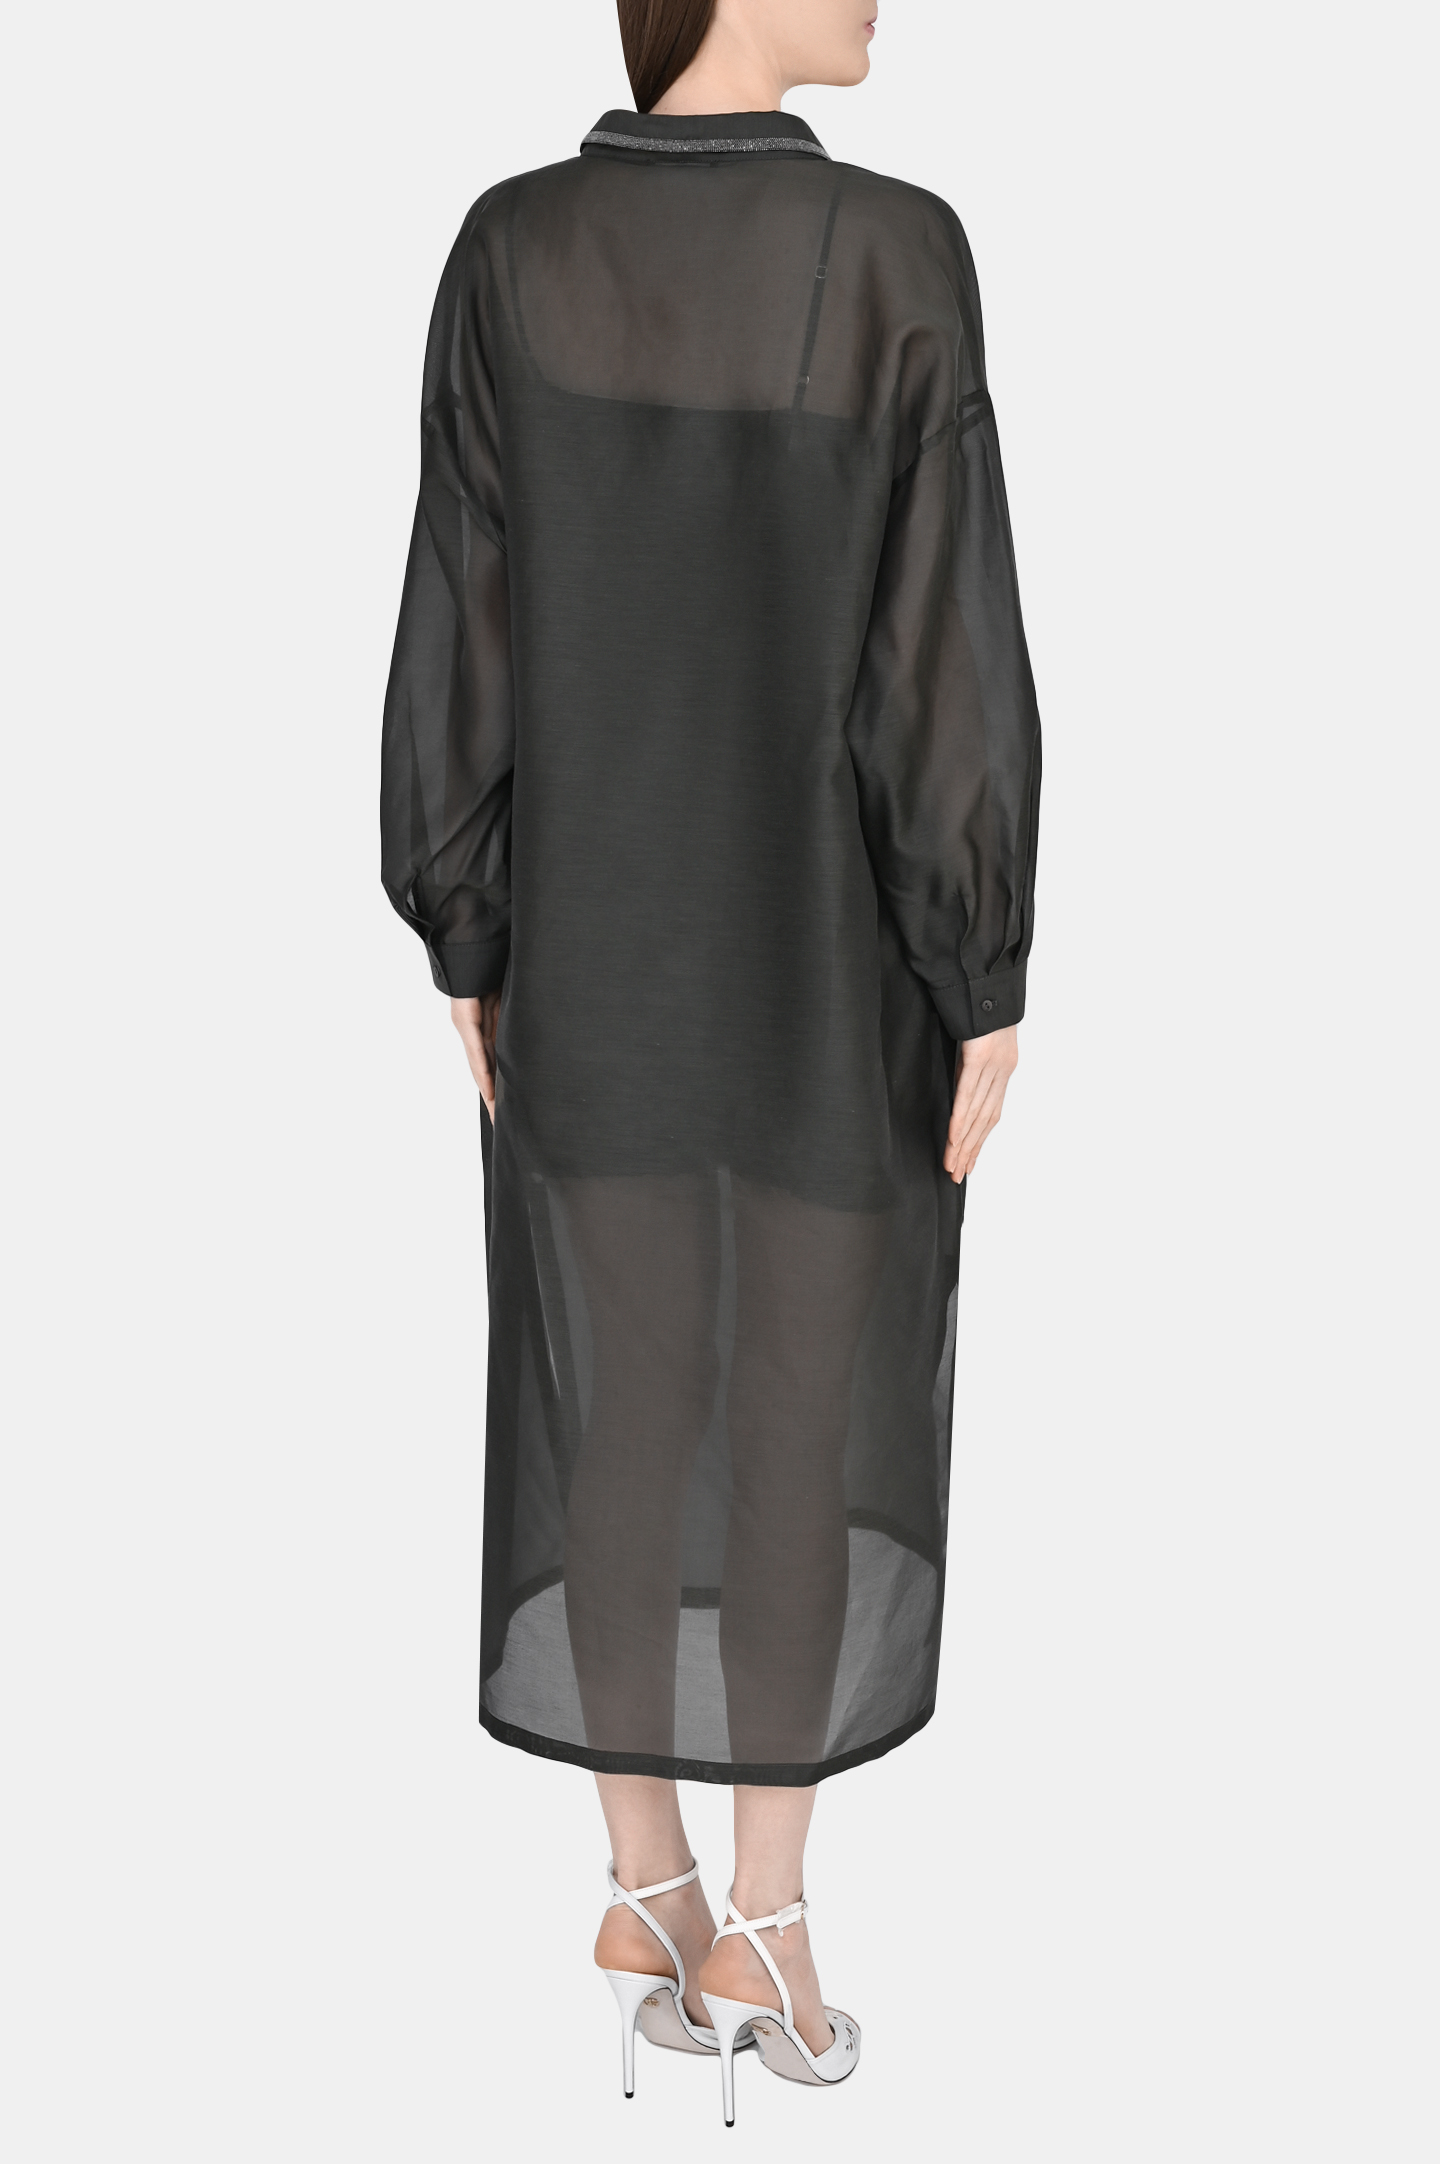 Платье FABIANA FILIPPI ABD273B579I810, цвет: Серый, Женский